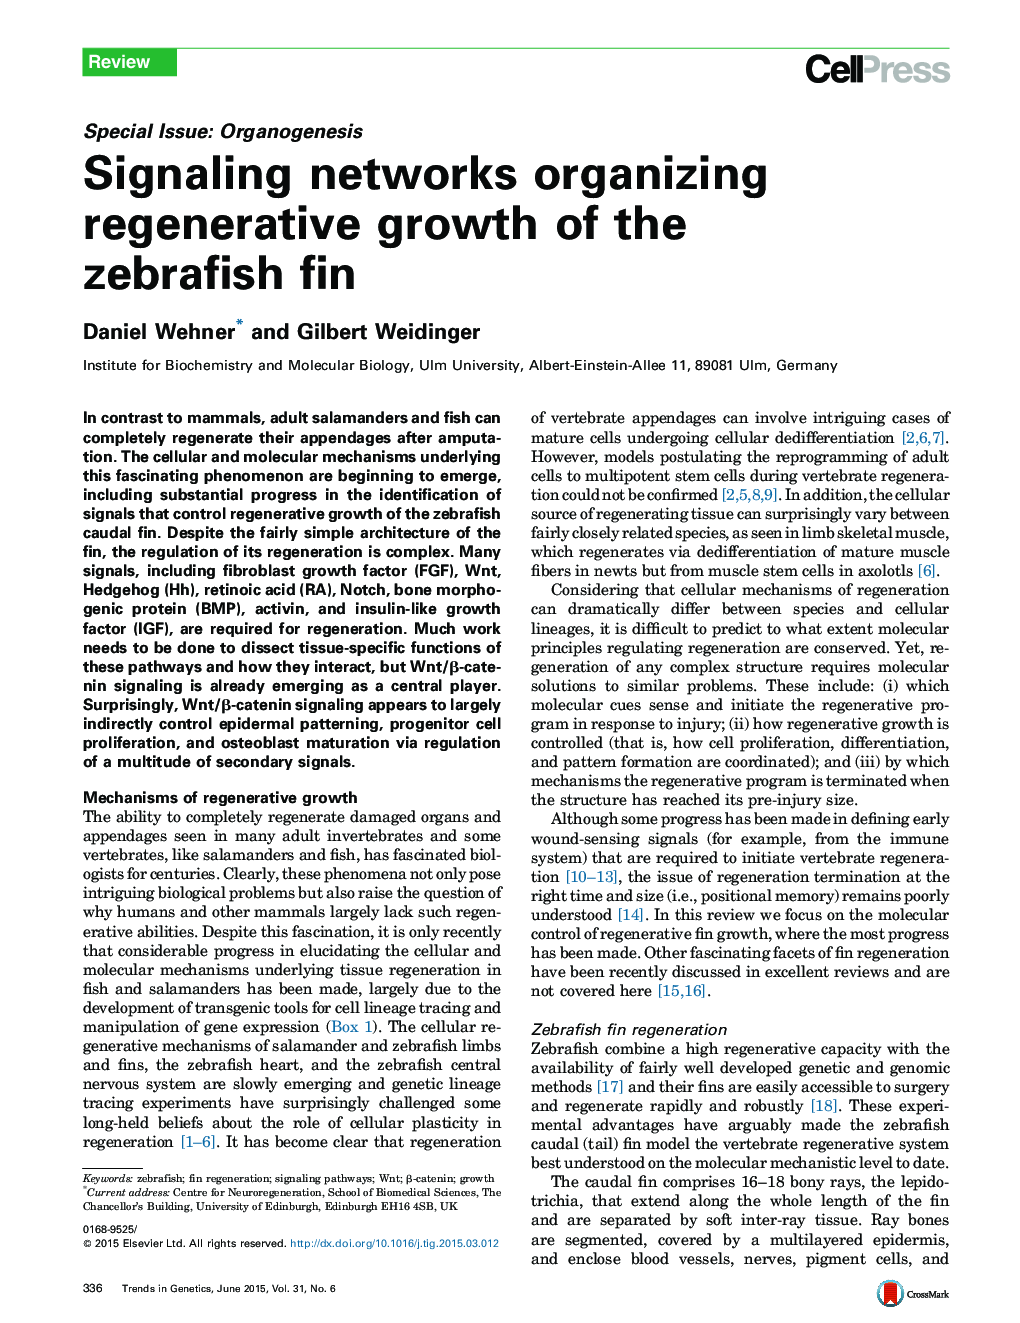 شبکه های سیگنالینگ، سازماندهی رشد بازآفرینی فین پرنده را دارند 